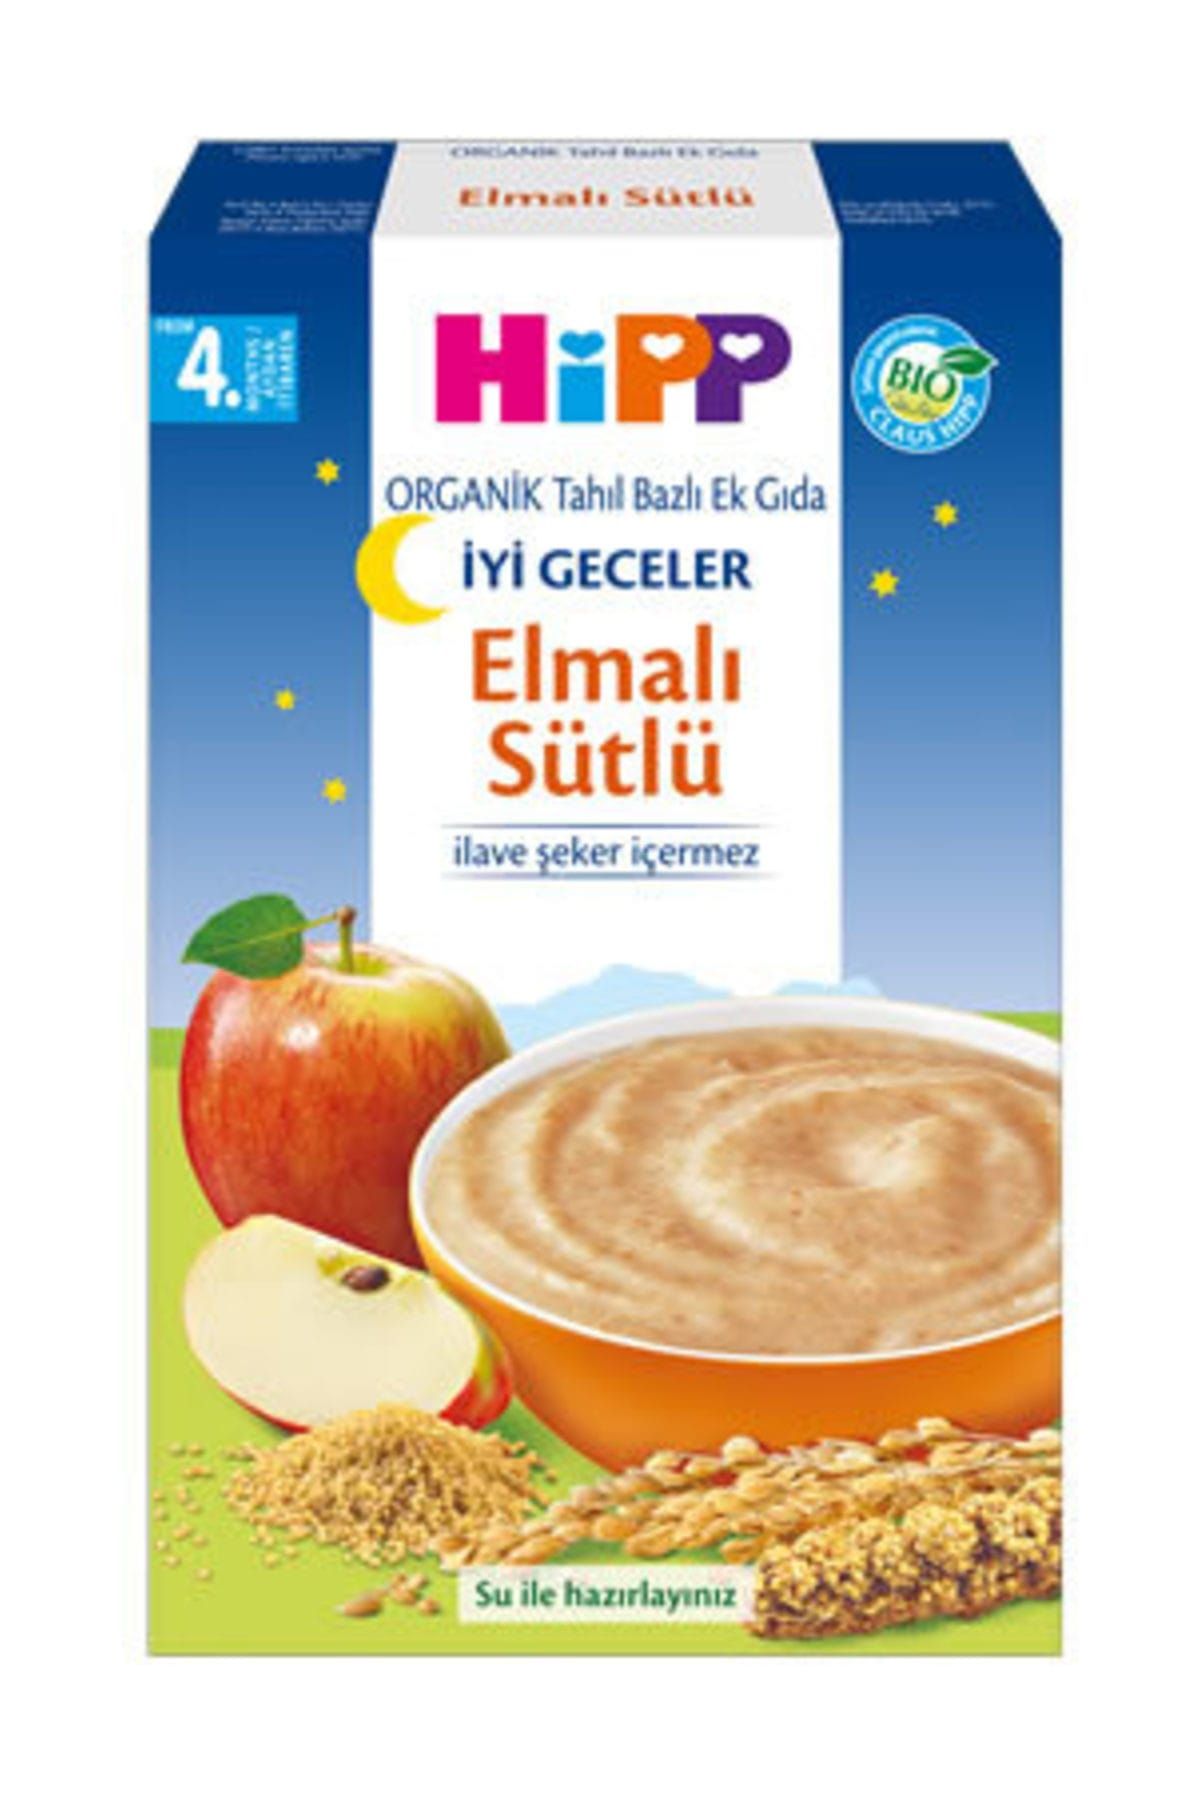 Hipp Organik İyi greceler Elmalı Sütlü Tahıllı Ek grıda 250 gr